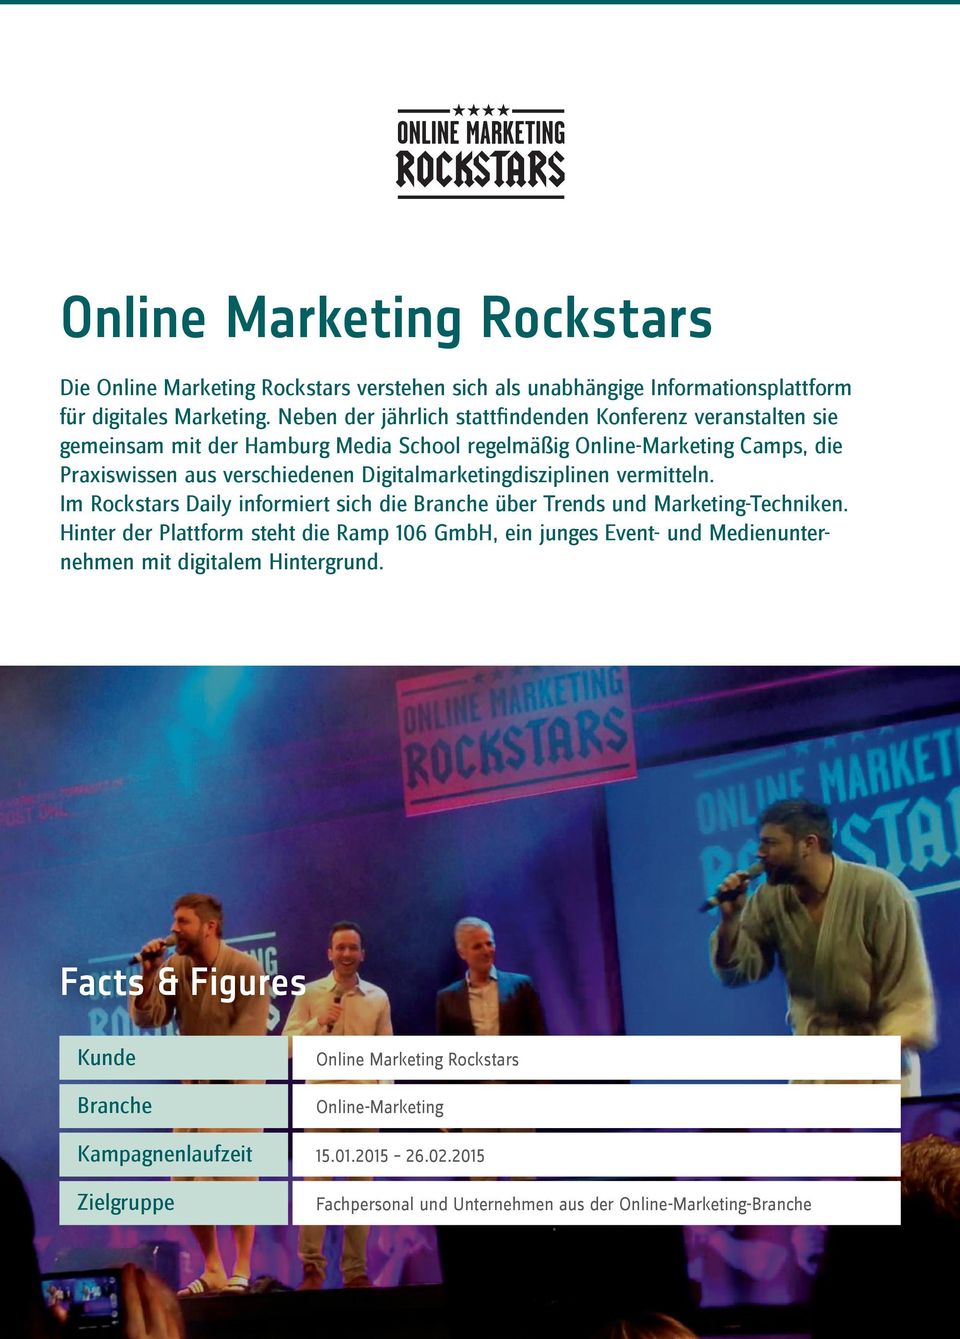 Digitalmarketingdisziplinen vermitteln. Im Rockstars Daily informiert sich die Branche über Trends und Marketing-Techniken.